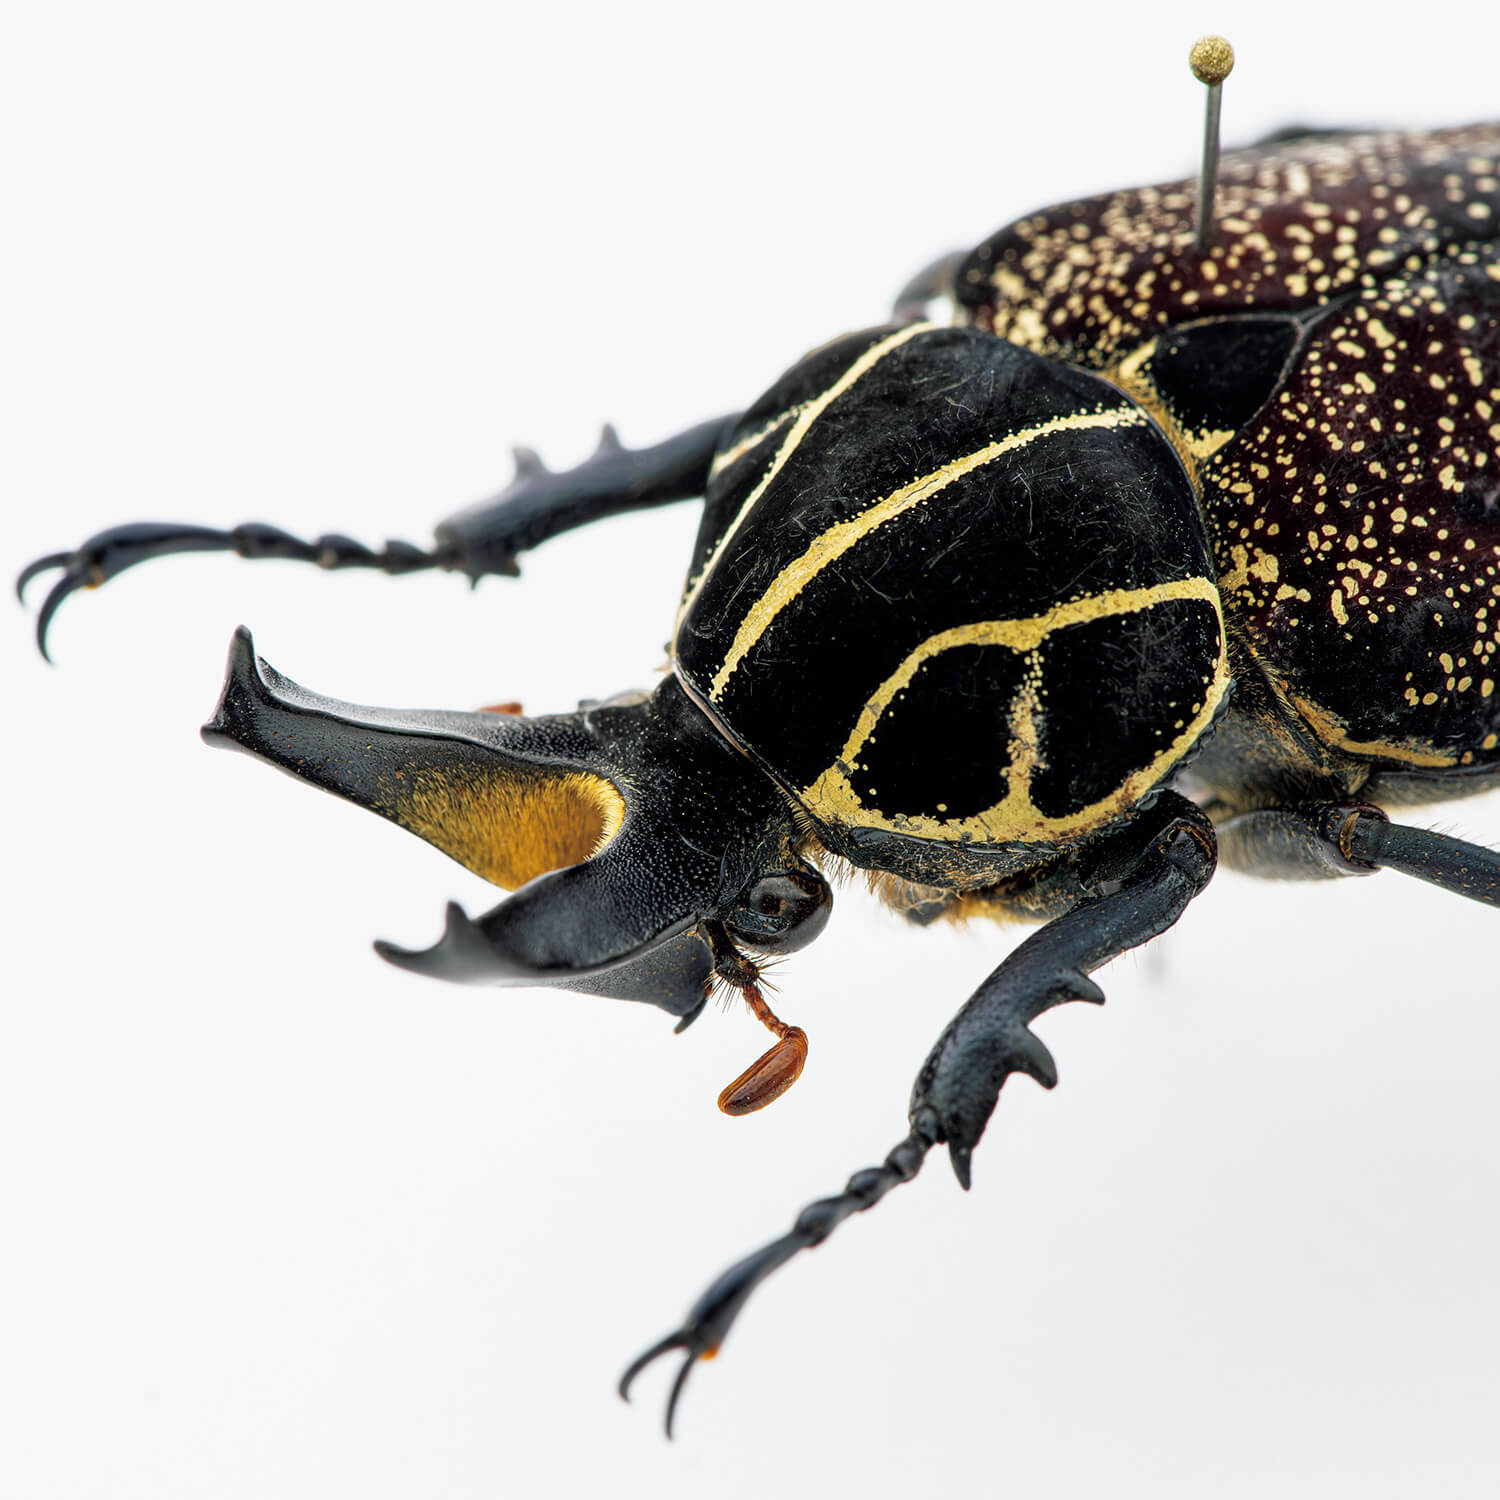 モードな虫図鑑。甲虫界の超一大メジャーグループ、コガネムシ8種類を 